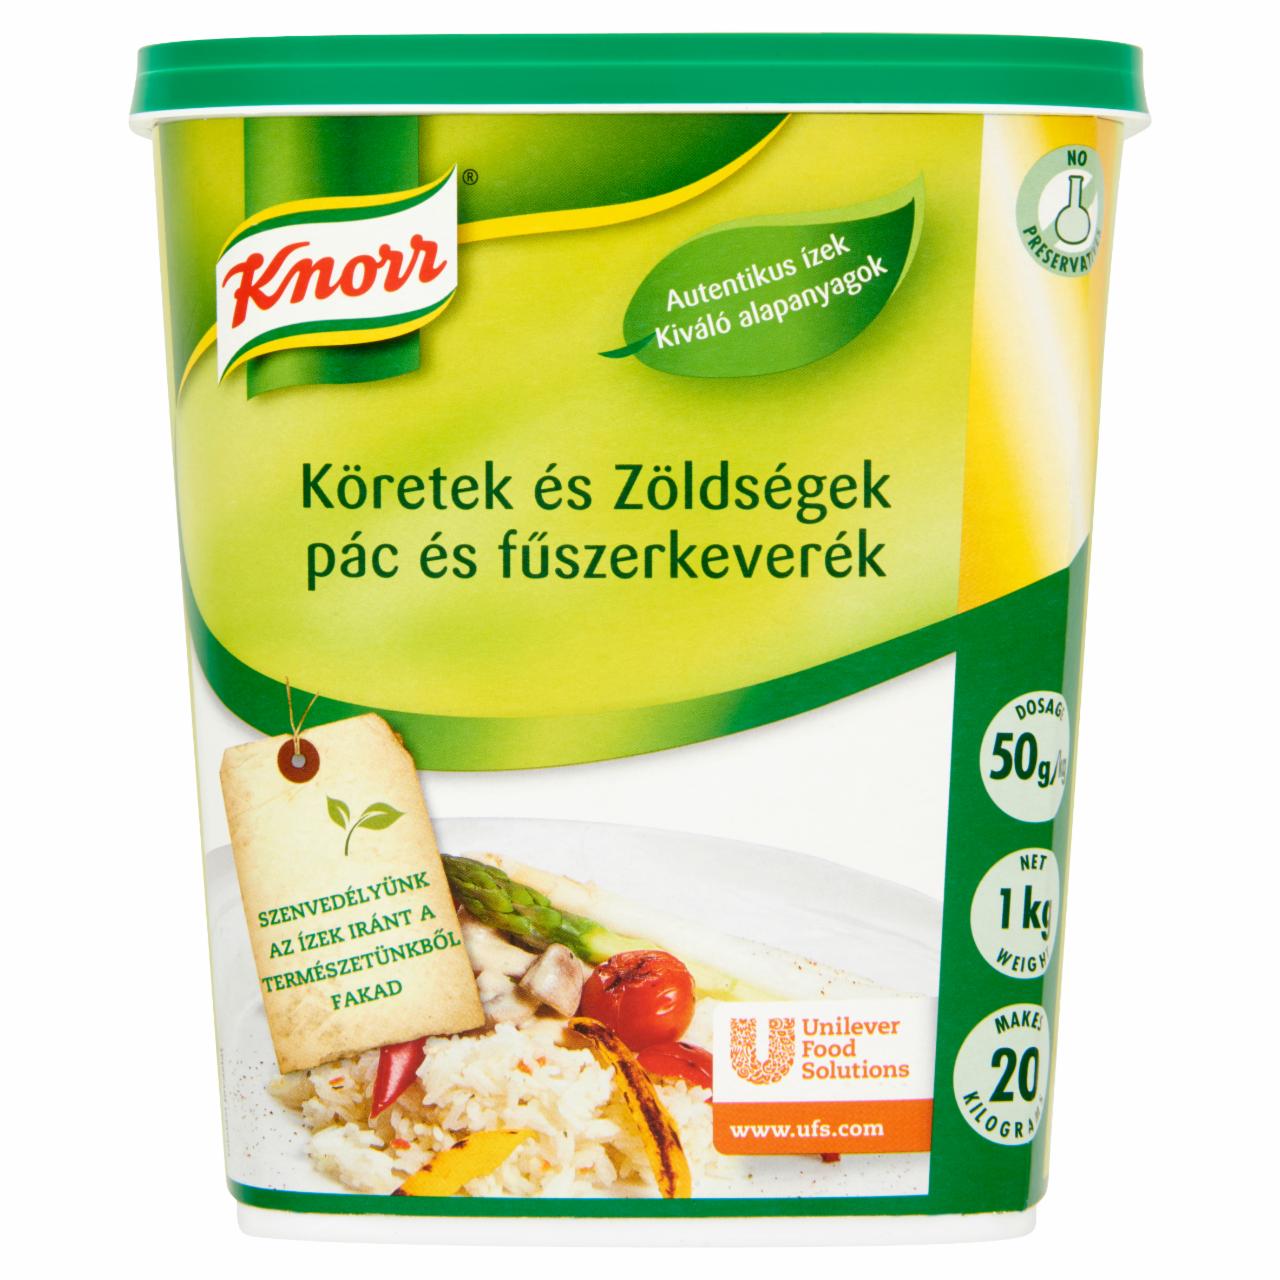 Képek - Knorr Köretek és Zöldségek pác és fűszerkeverék 1 kg